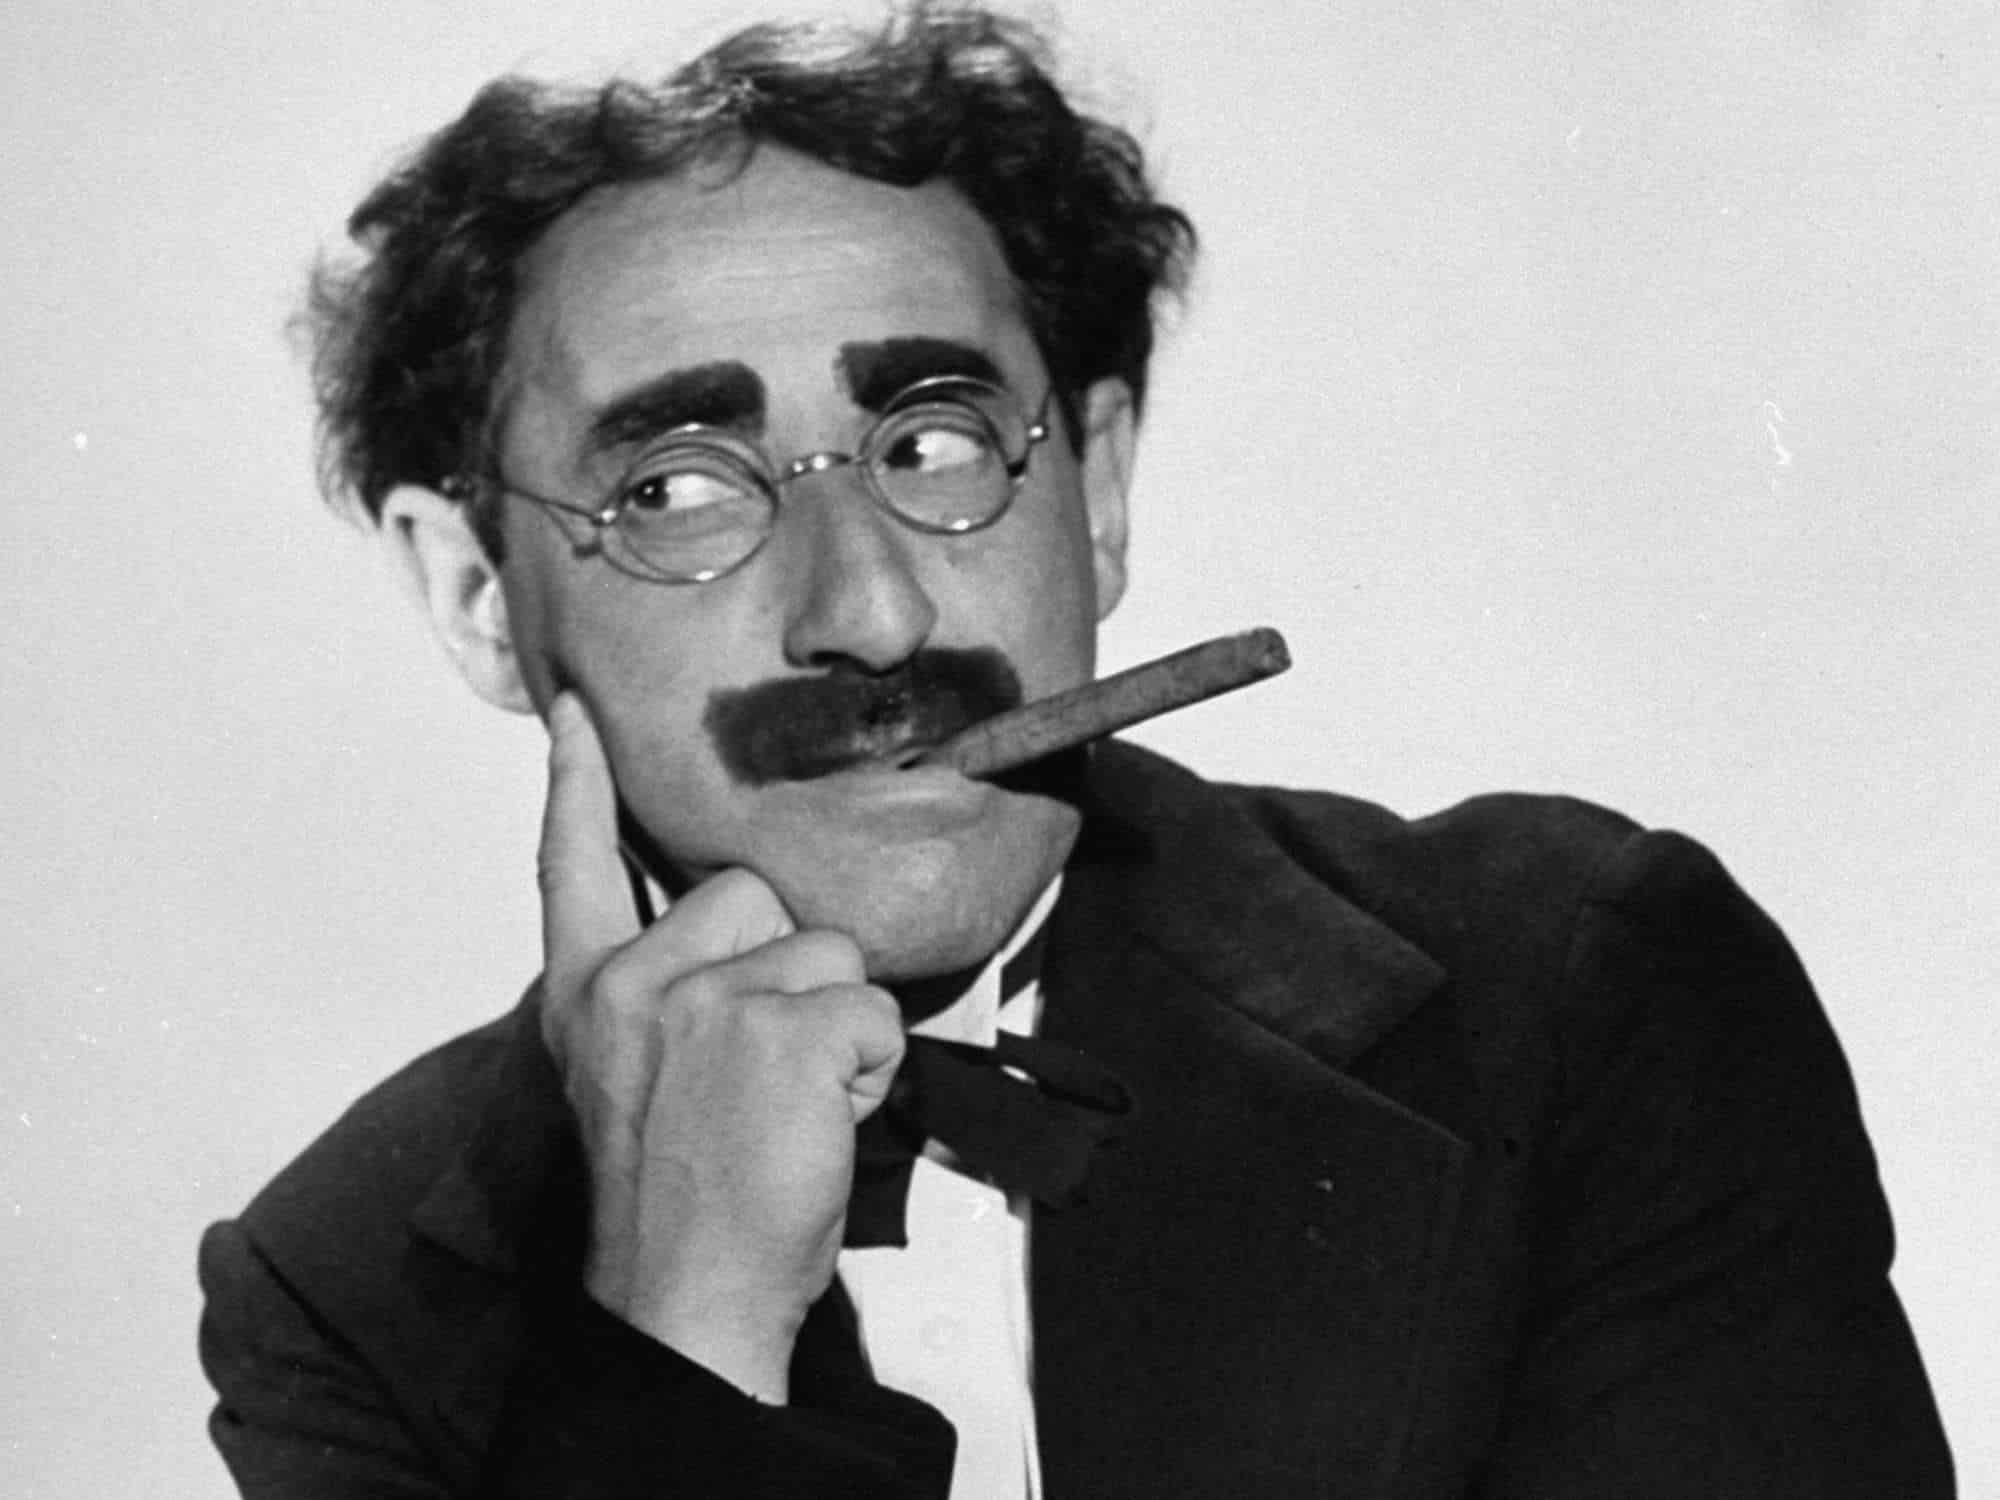 Groucho Marx divertente